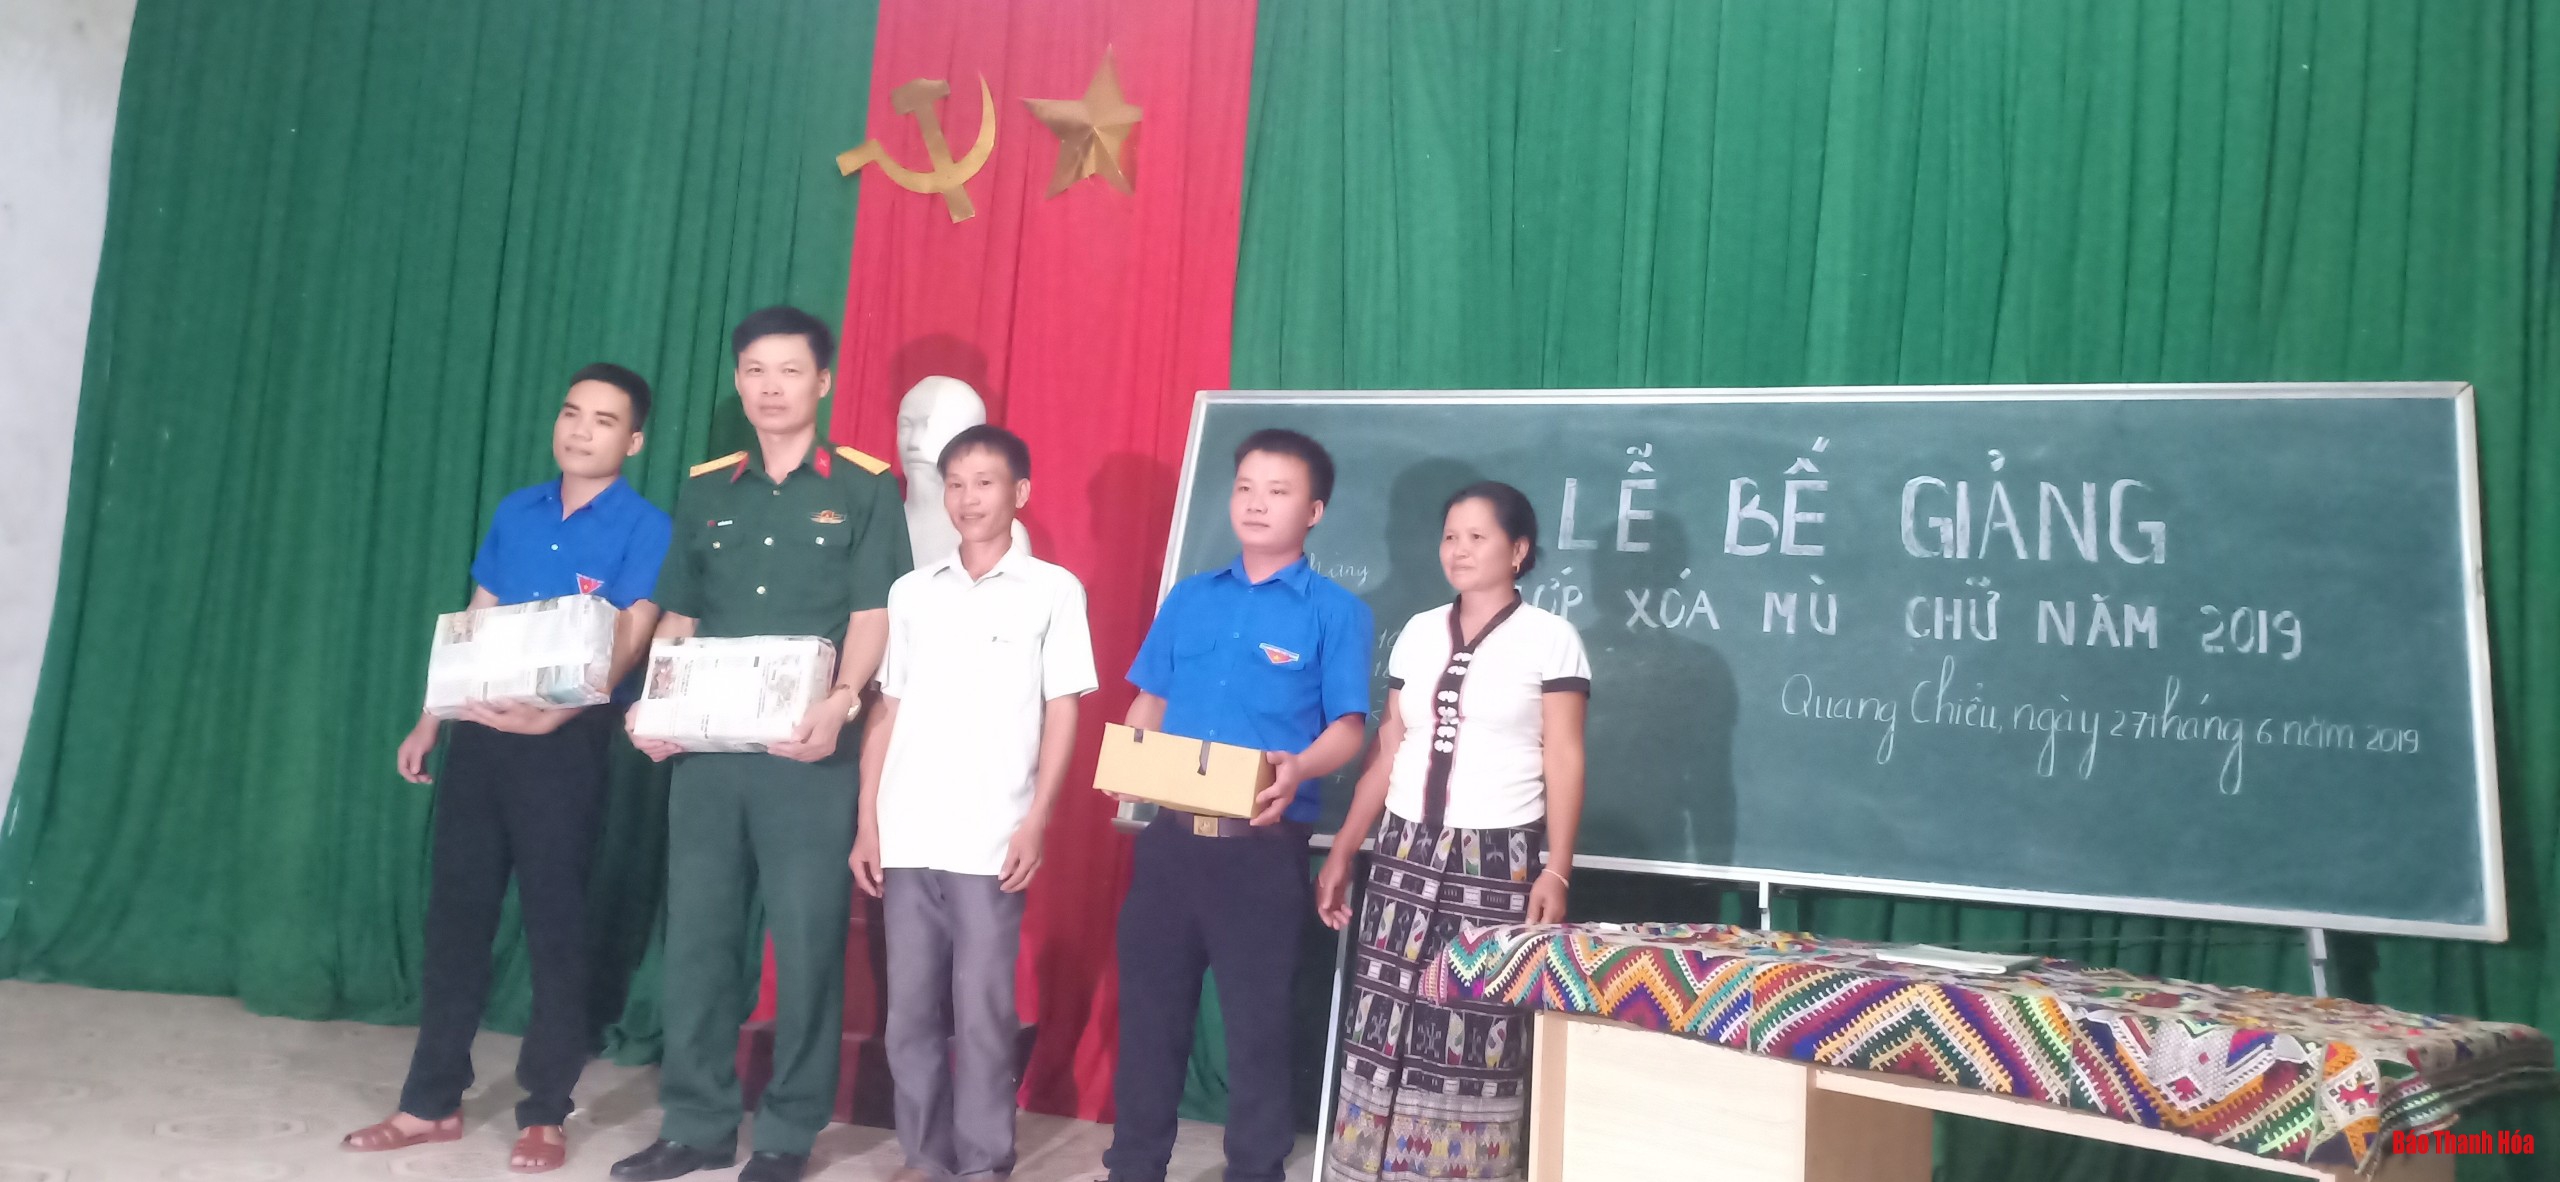 Bế giảng lớp xóa mù chữ cho bà con nhân dân huyện Mường Lát